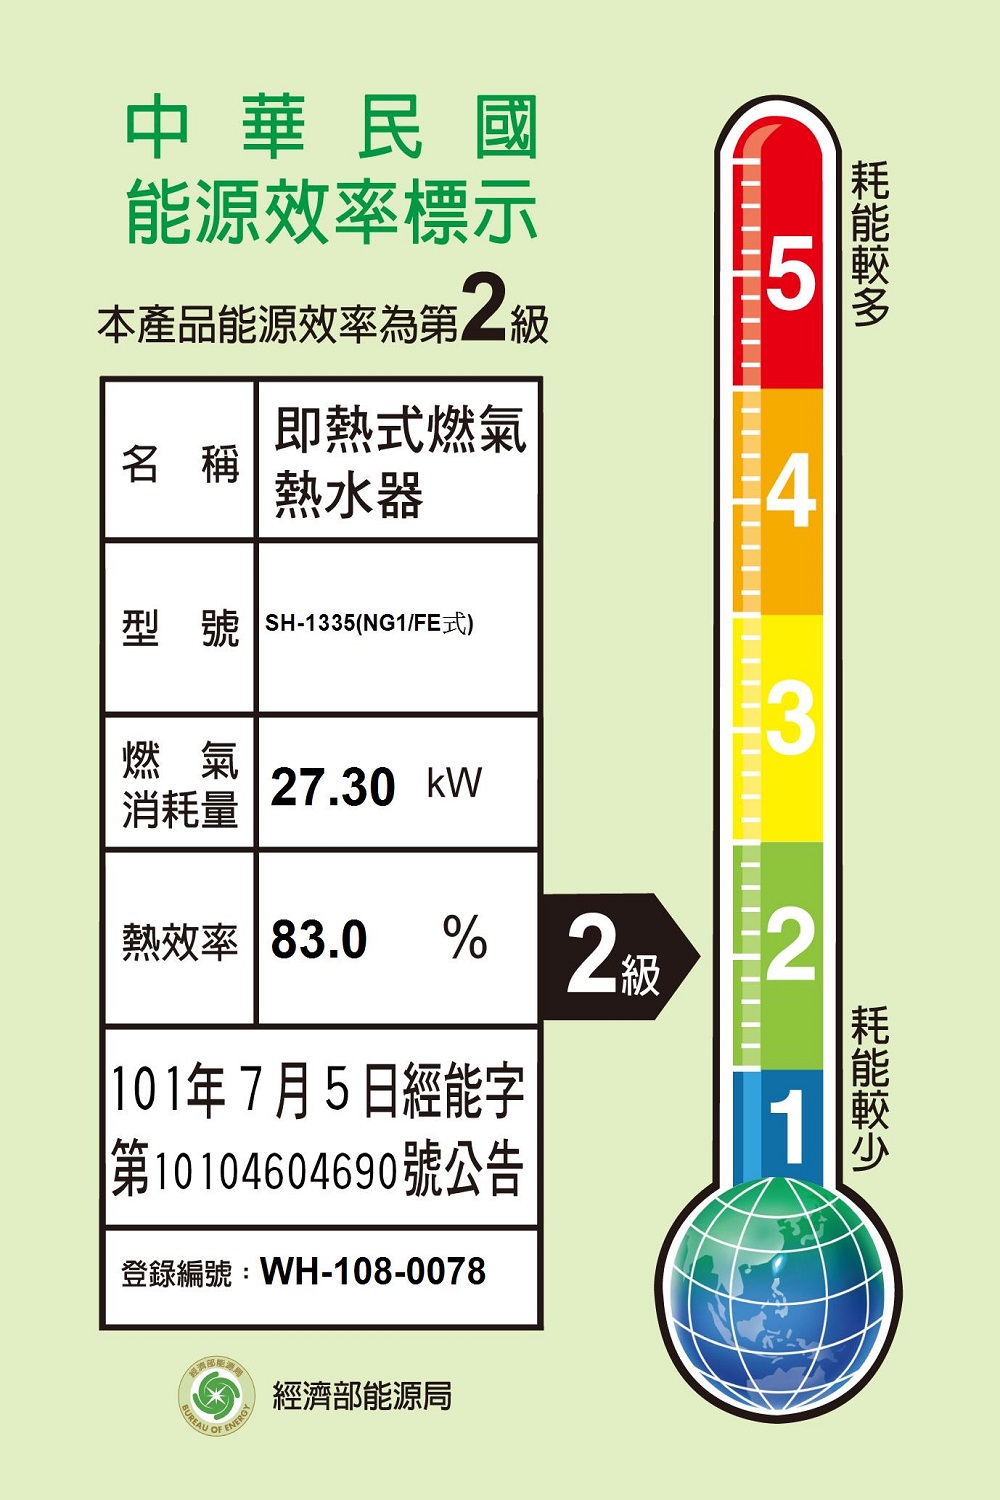 SAKURA 櫻花 13公升強制排氣H-1335熱水器FE式